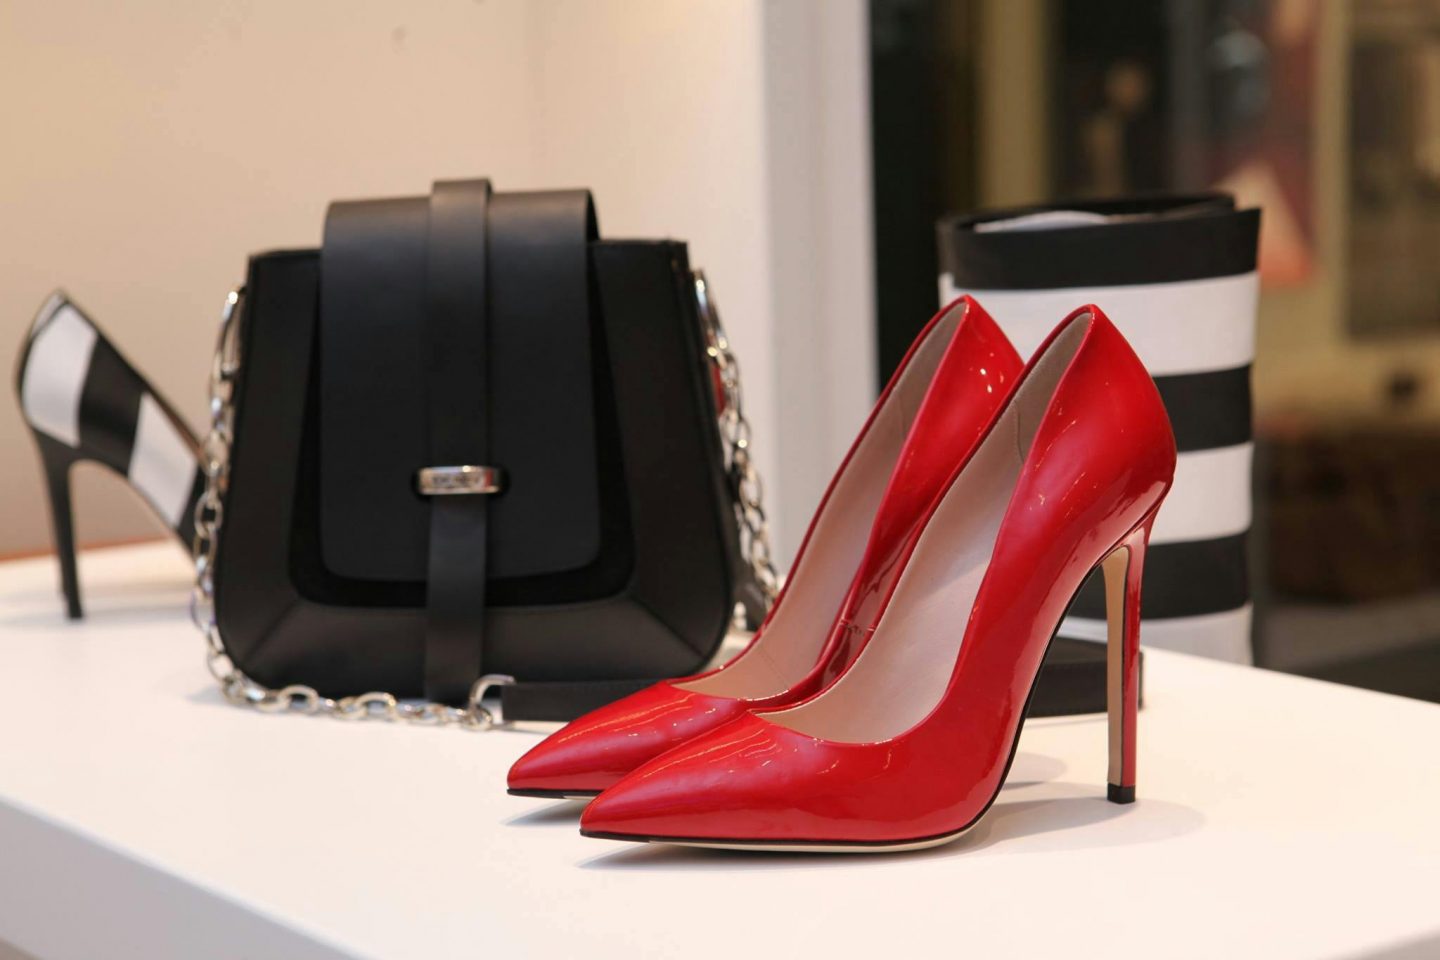 Women's high heels and handbag